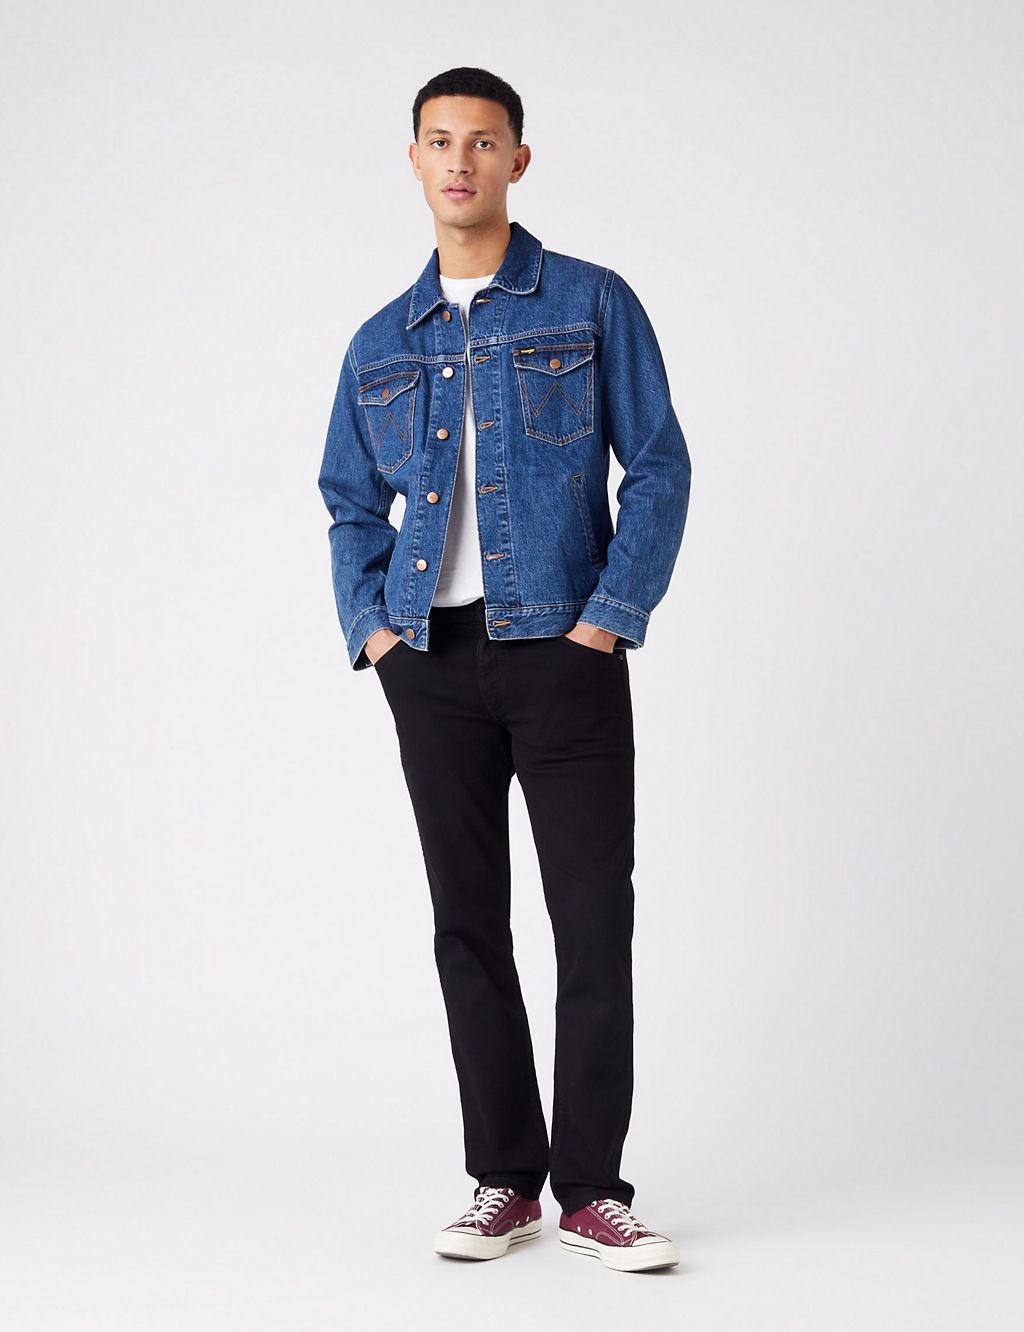 Greensboro Regular Straight Fit Jeans | Wrangler | M&S